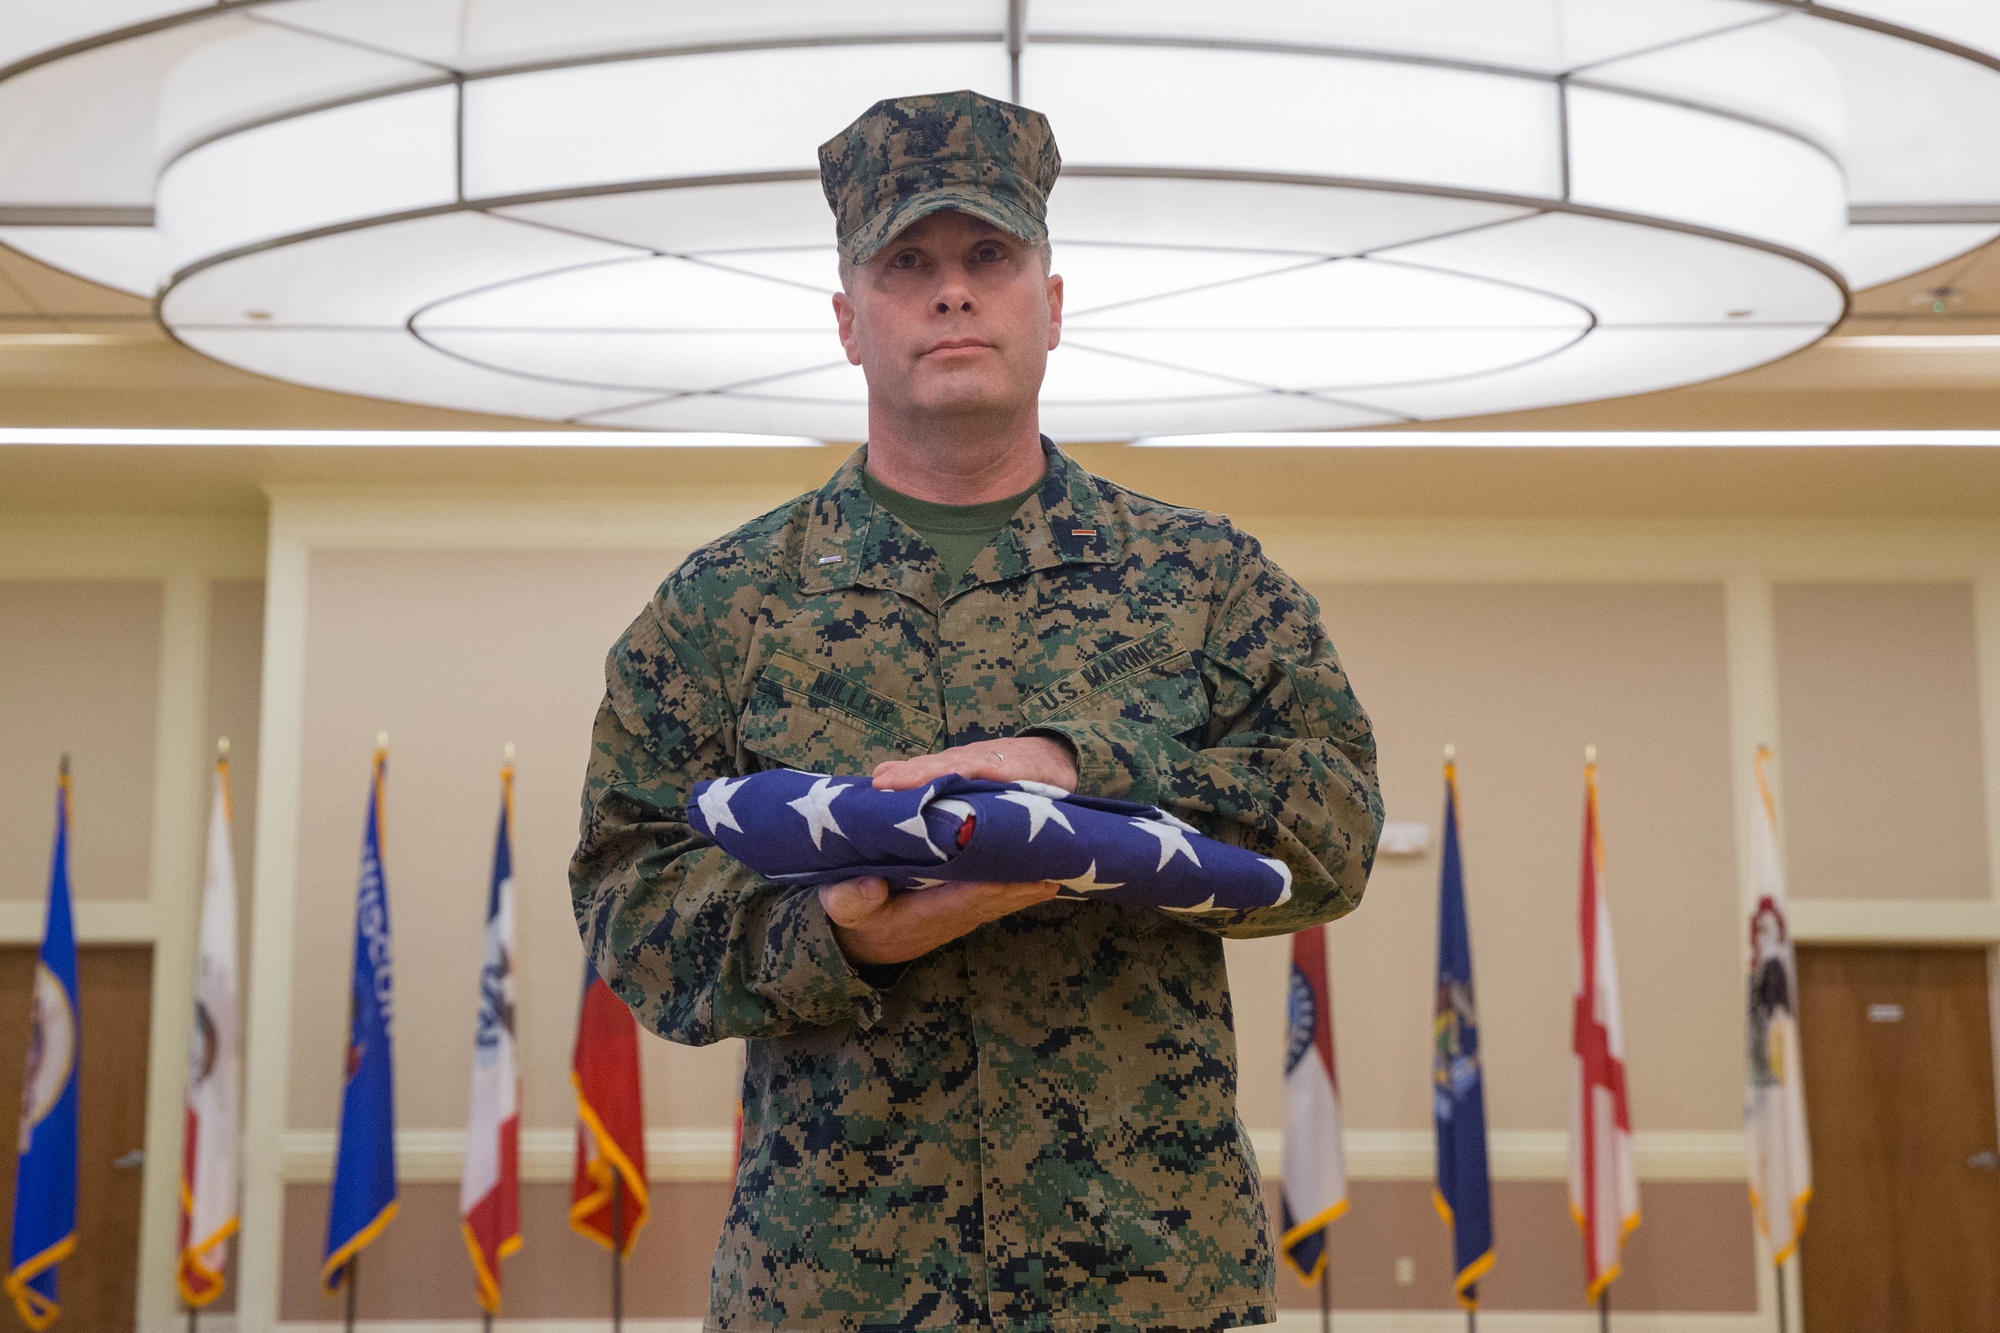 DVIDS - Images - Lt. Col. Manning Retirement Ceremony [Image 5 of 7]